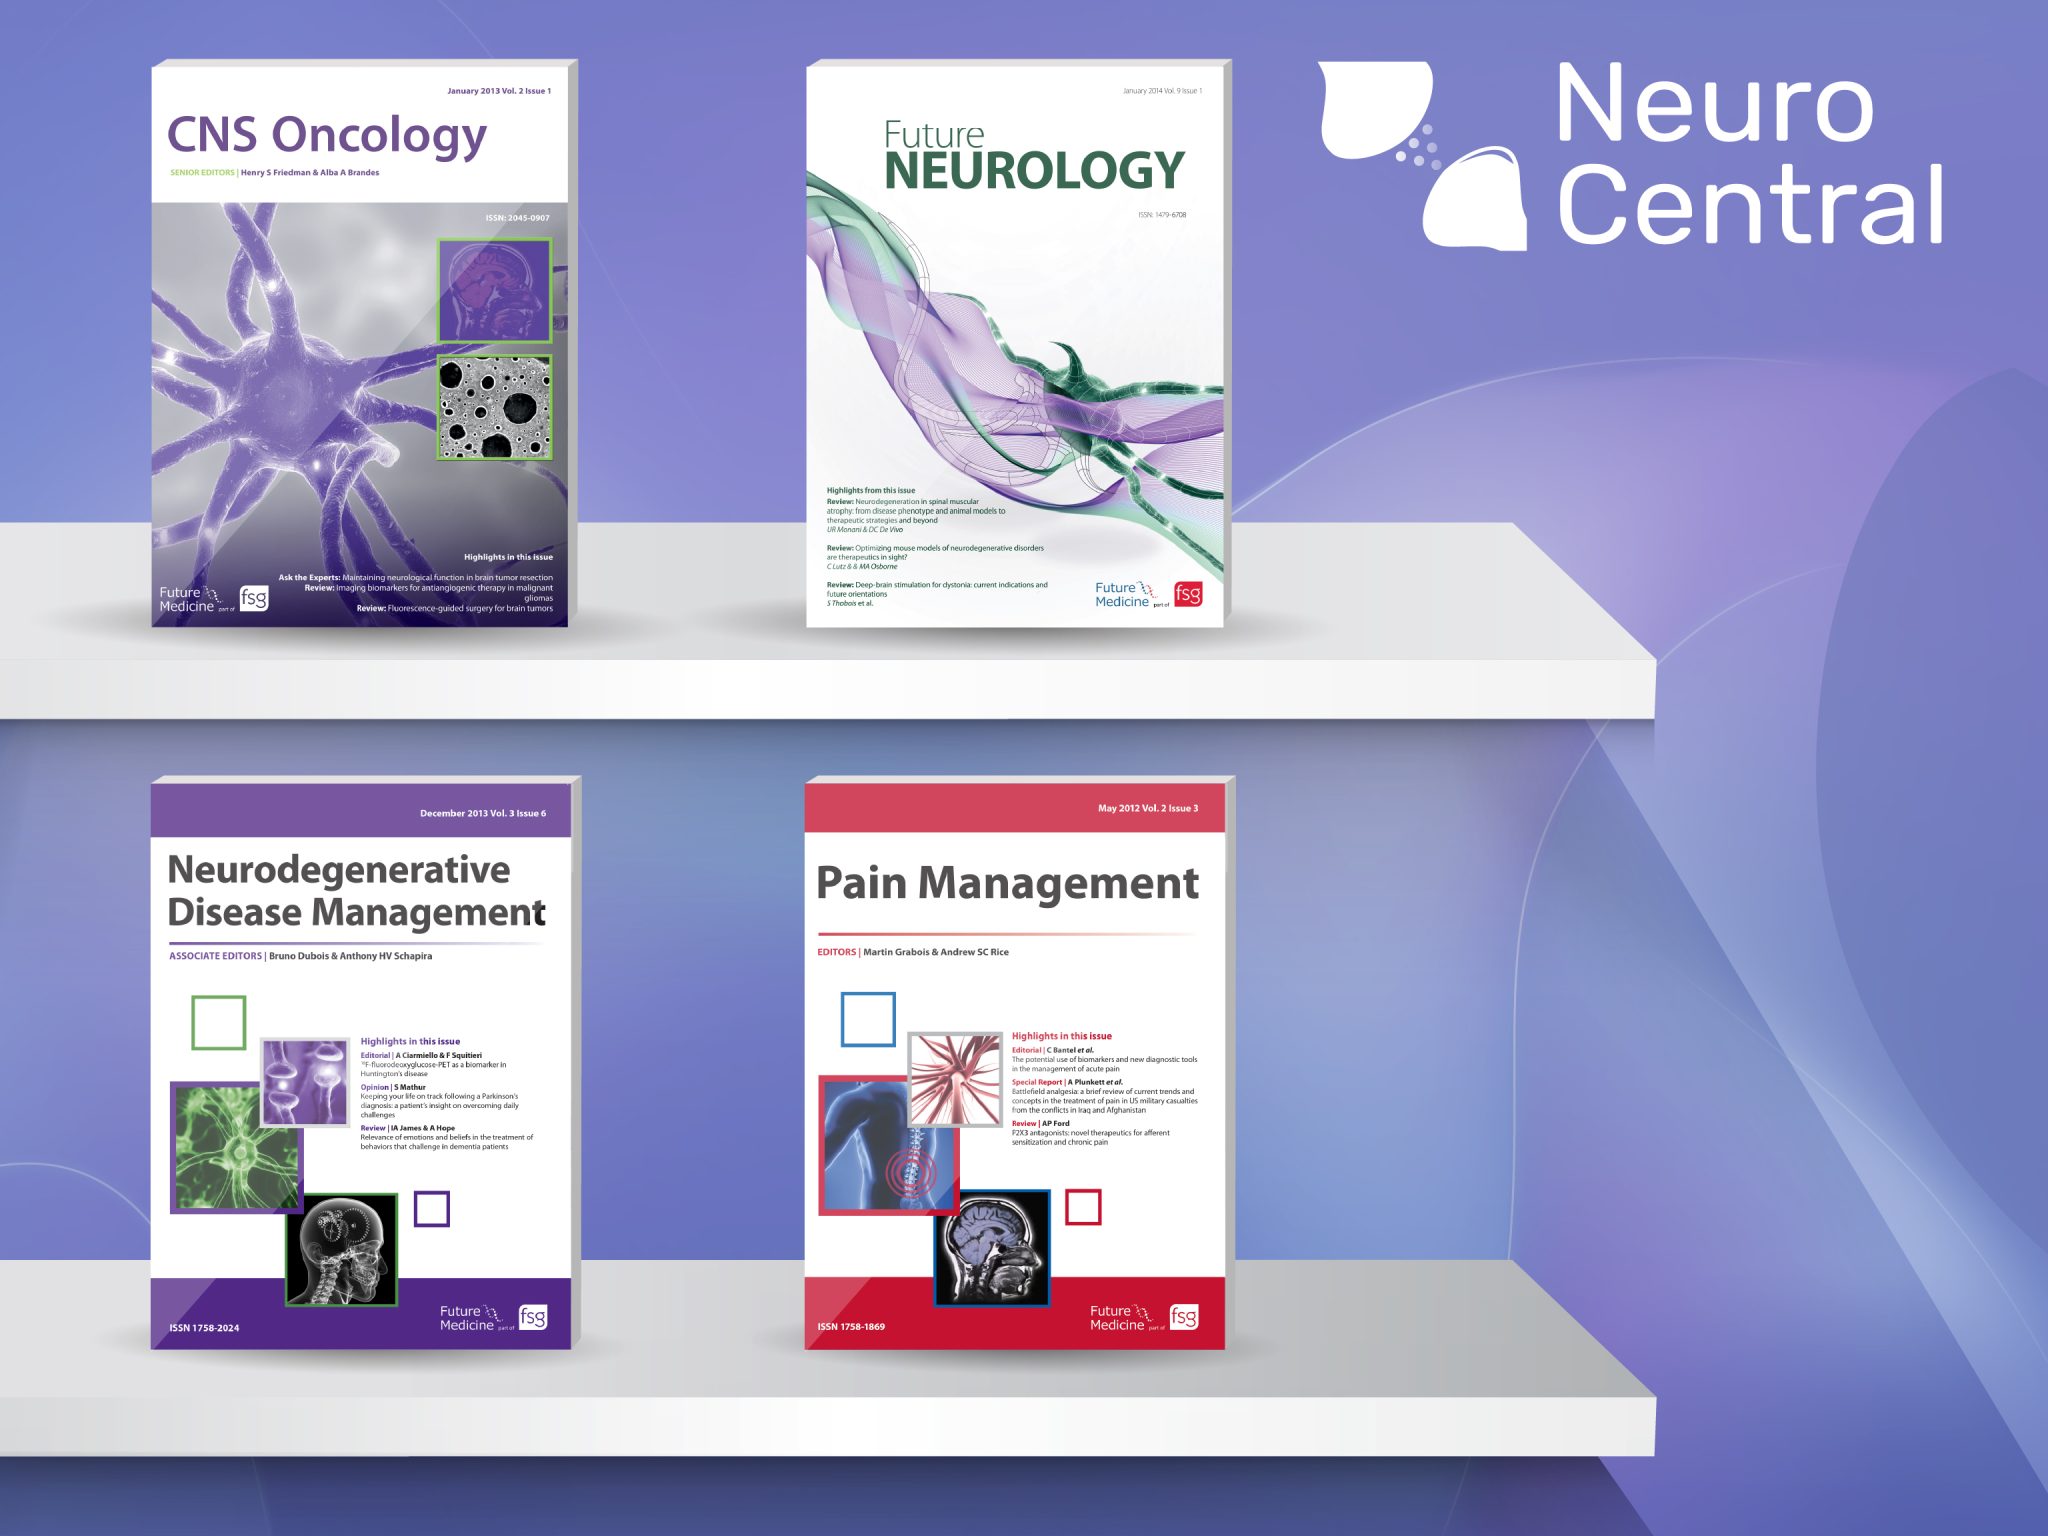 Neuro Central journals